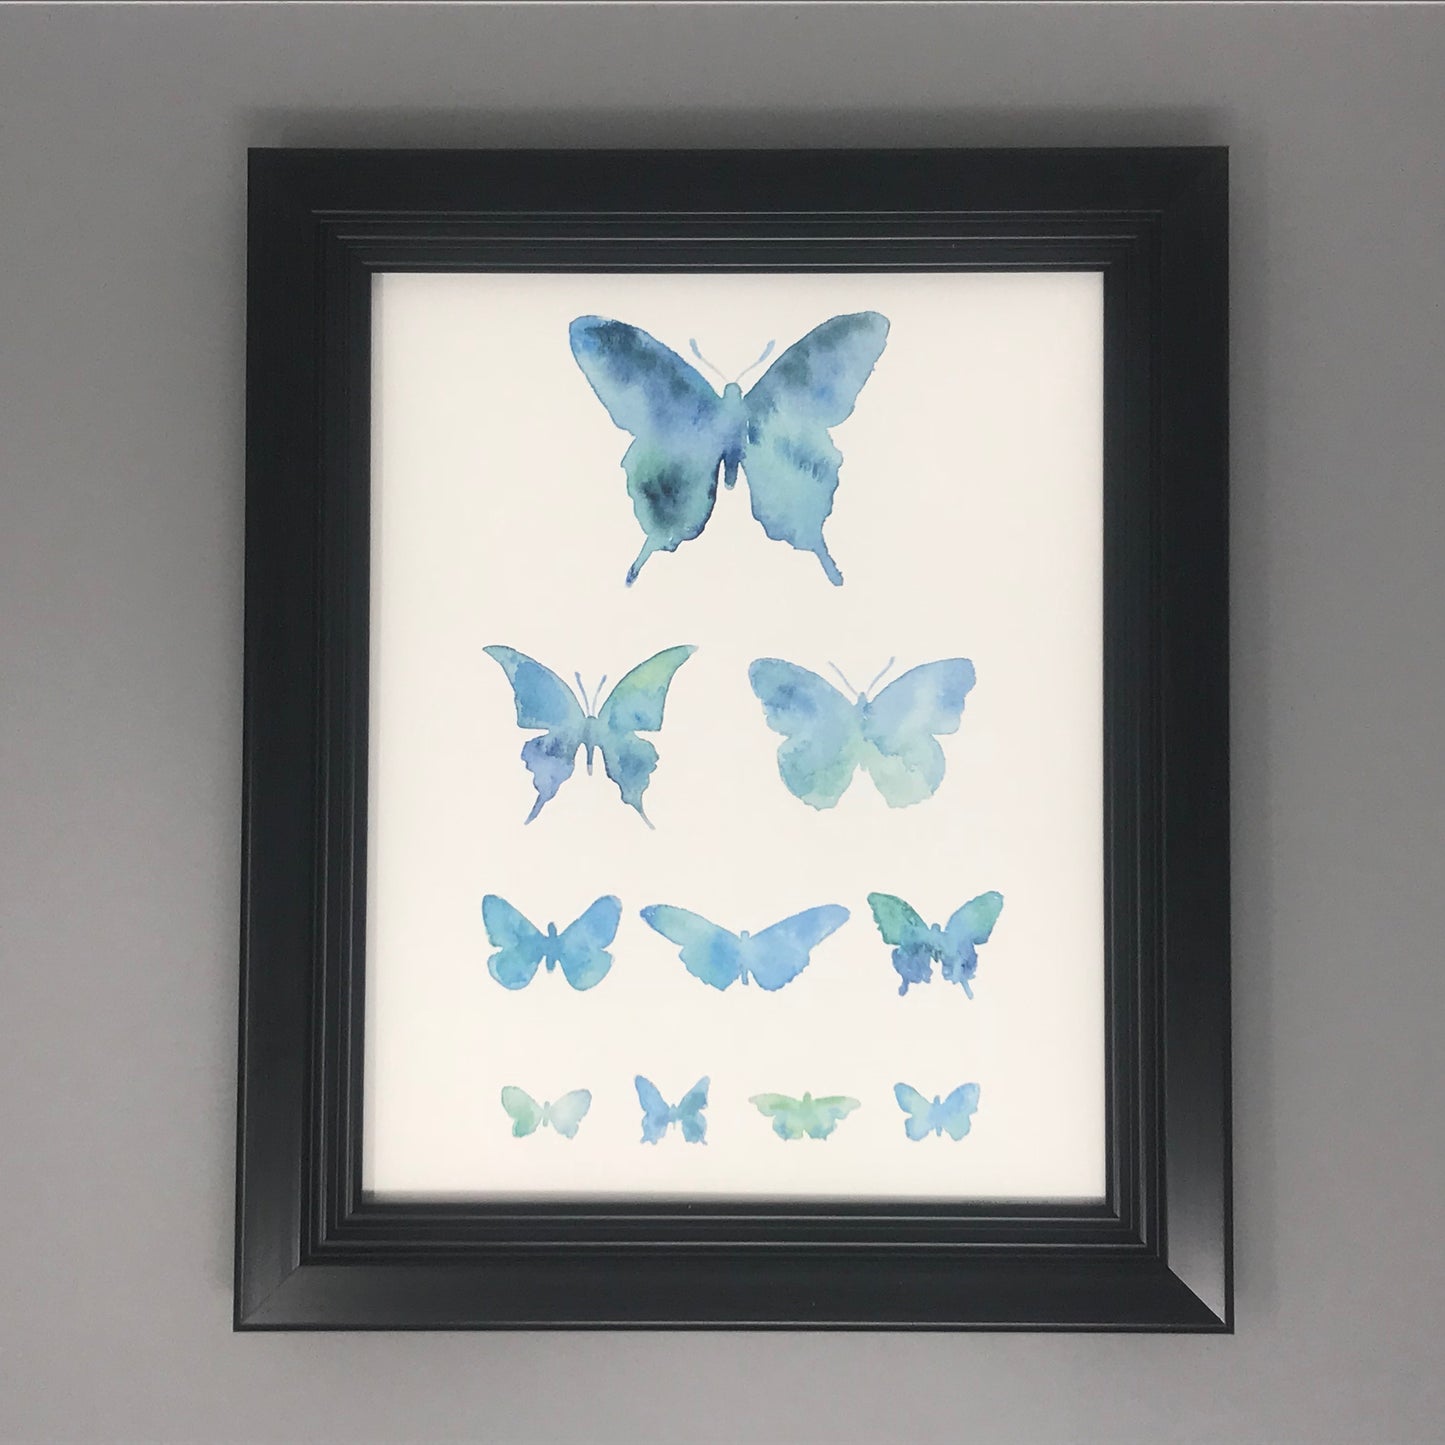 A print of blue / aqua butterflies in an eye chart. 